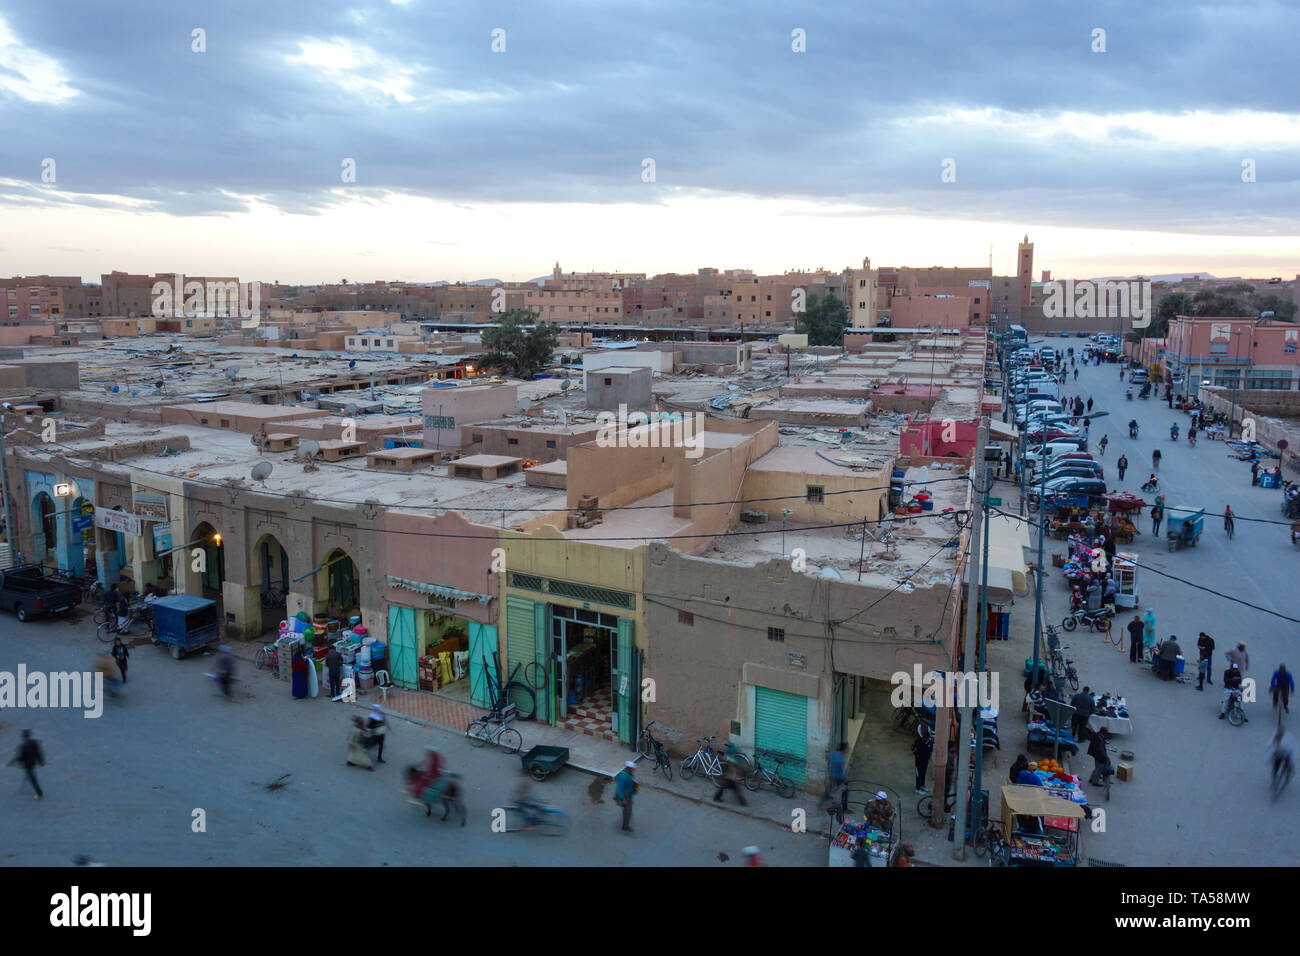 Rissani, Maroc - Mars 21st, 2019 : une vue sur la rue principale avec les sections locales d'occupation pendant le coucher du soleil. Banque D'Images